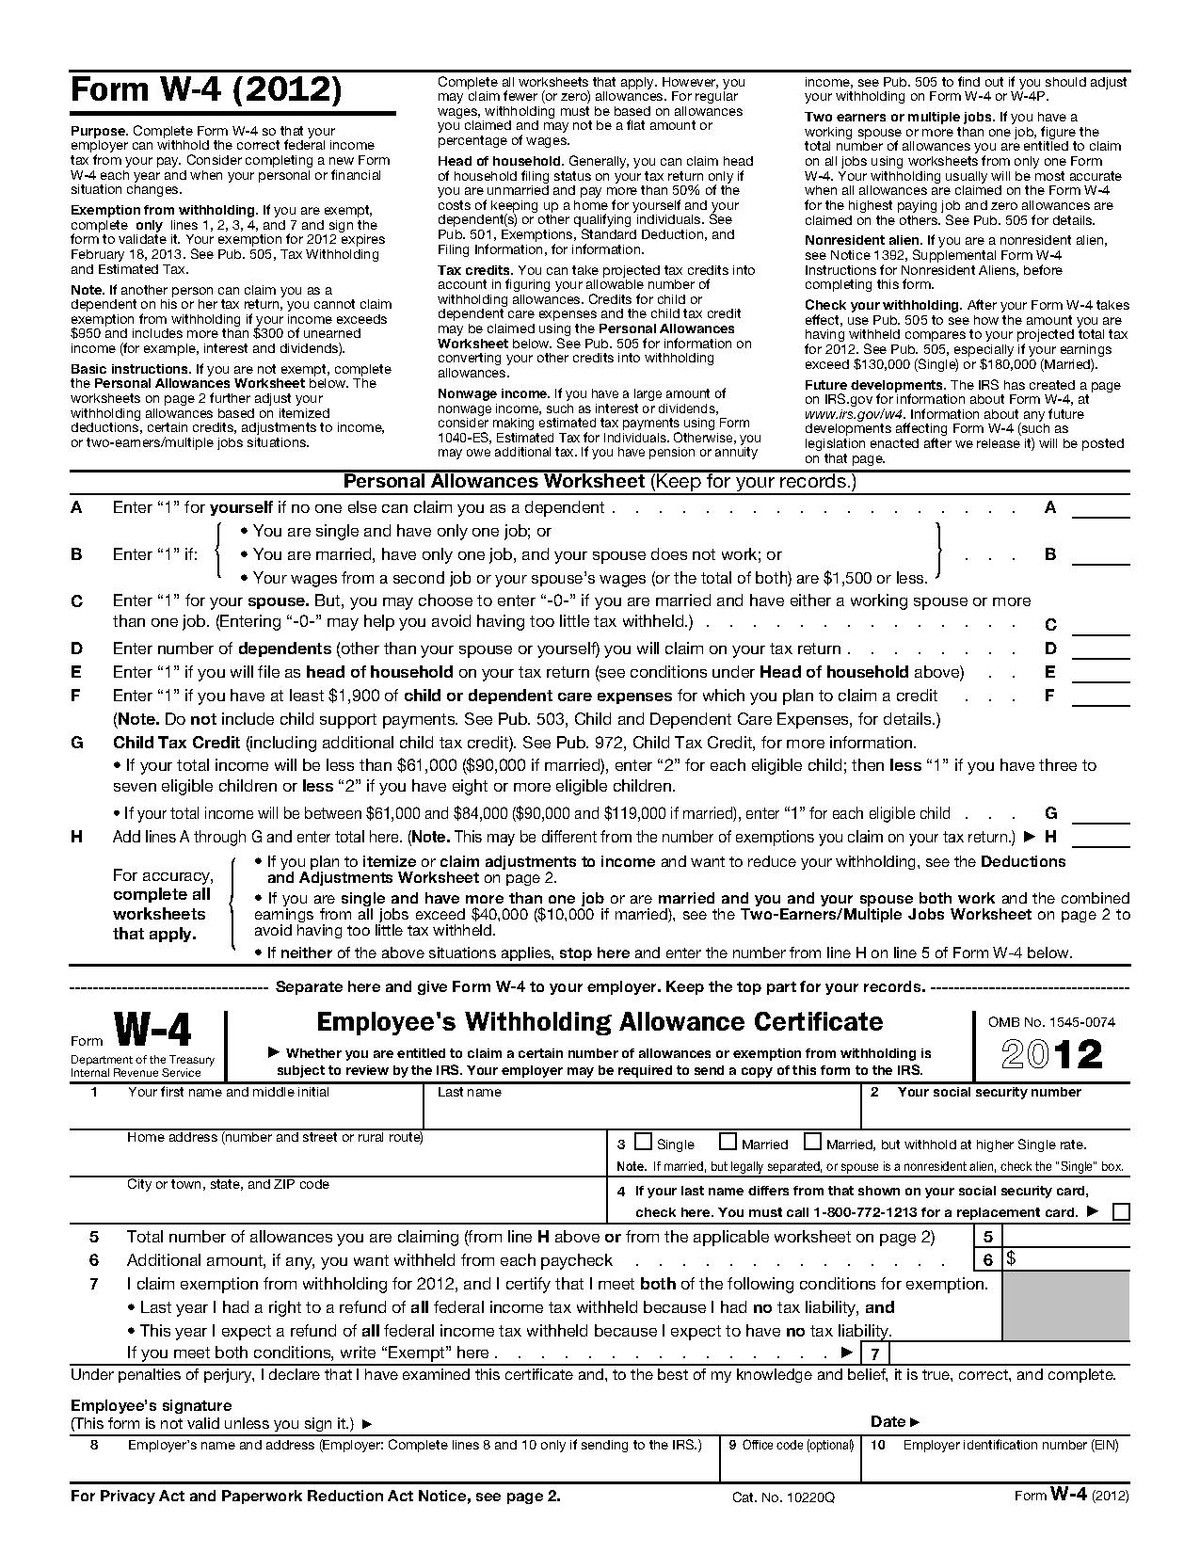 Form W-4 - Wikipedia-Blank W-9 Form 2020